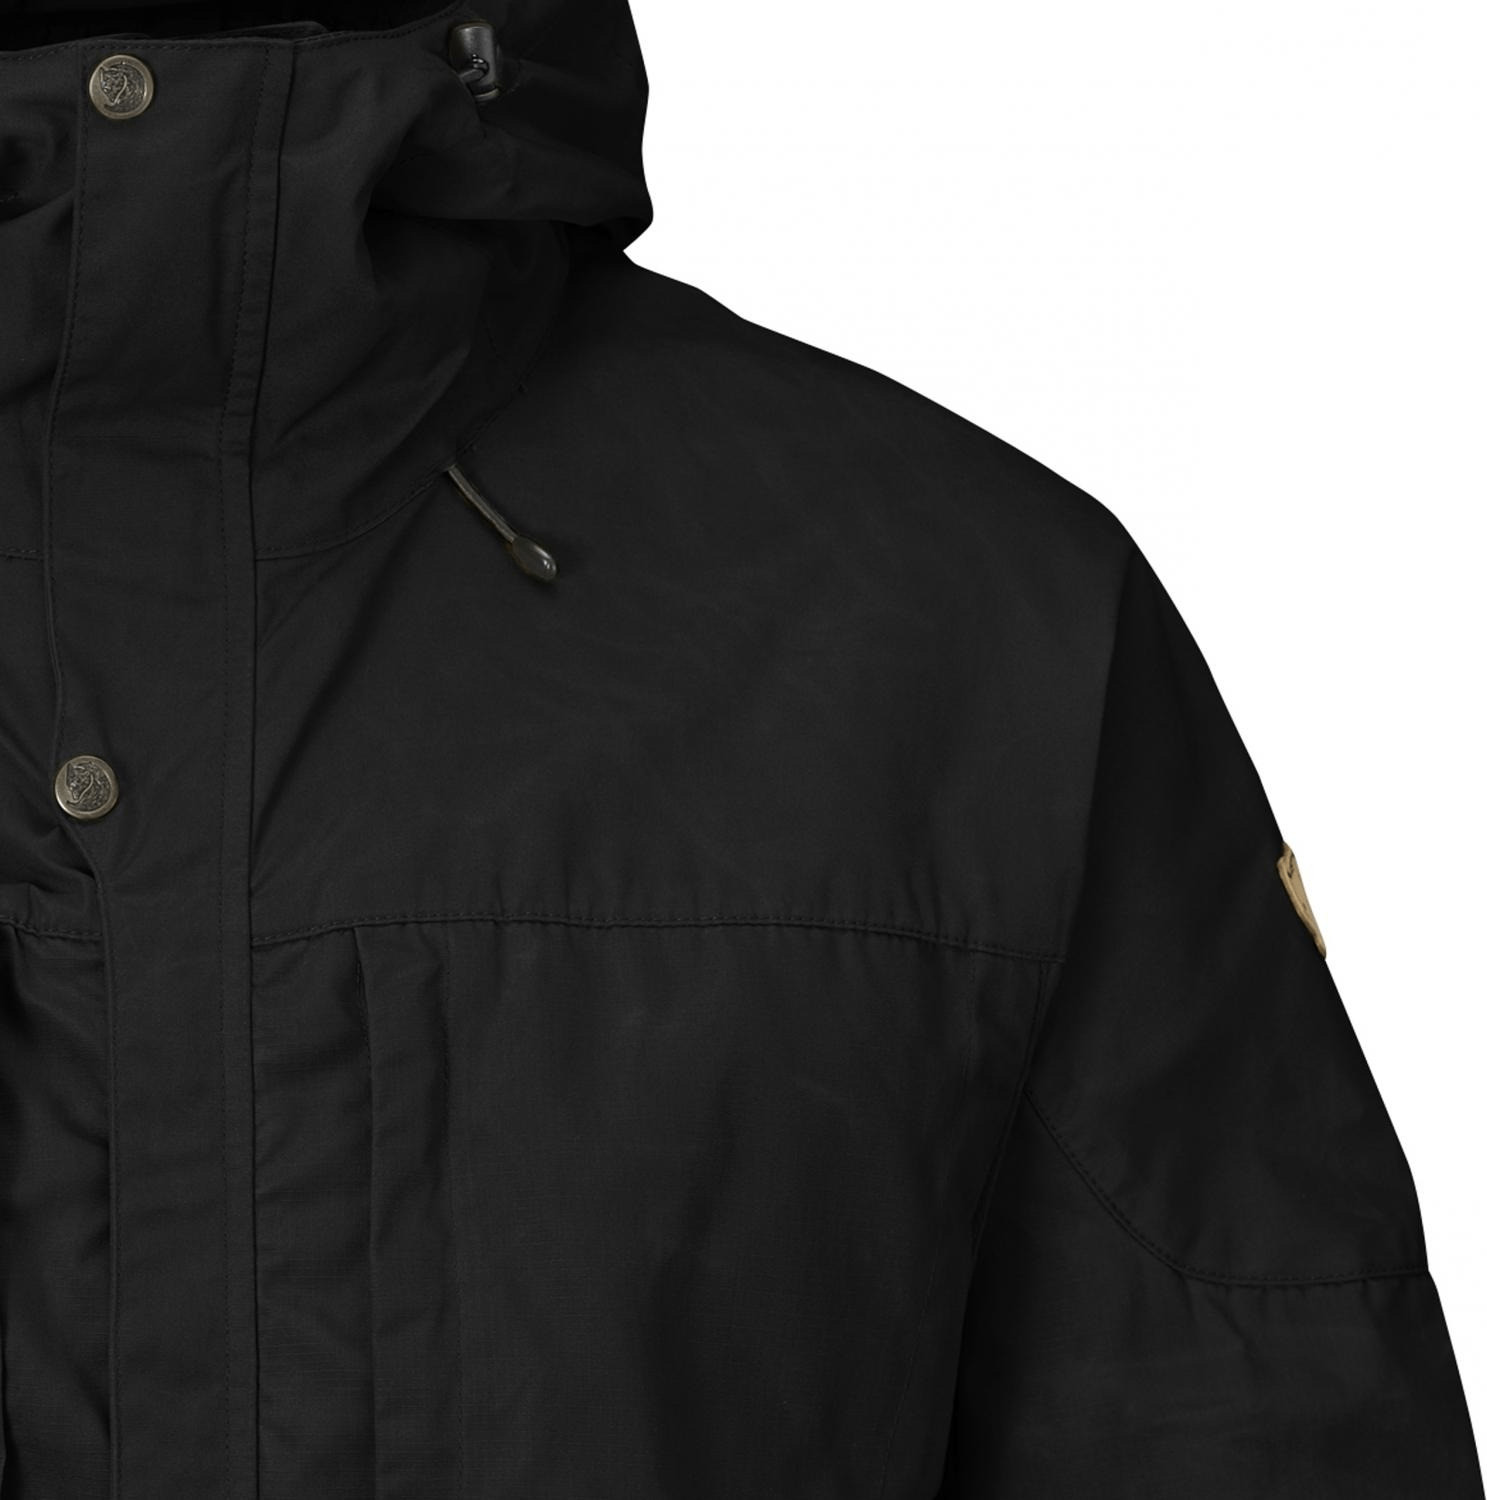 Buy Fjällräven Skogsö Jacket M black from £156.24 (Today) – Best Deals ...